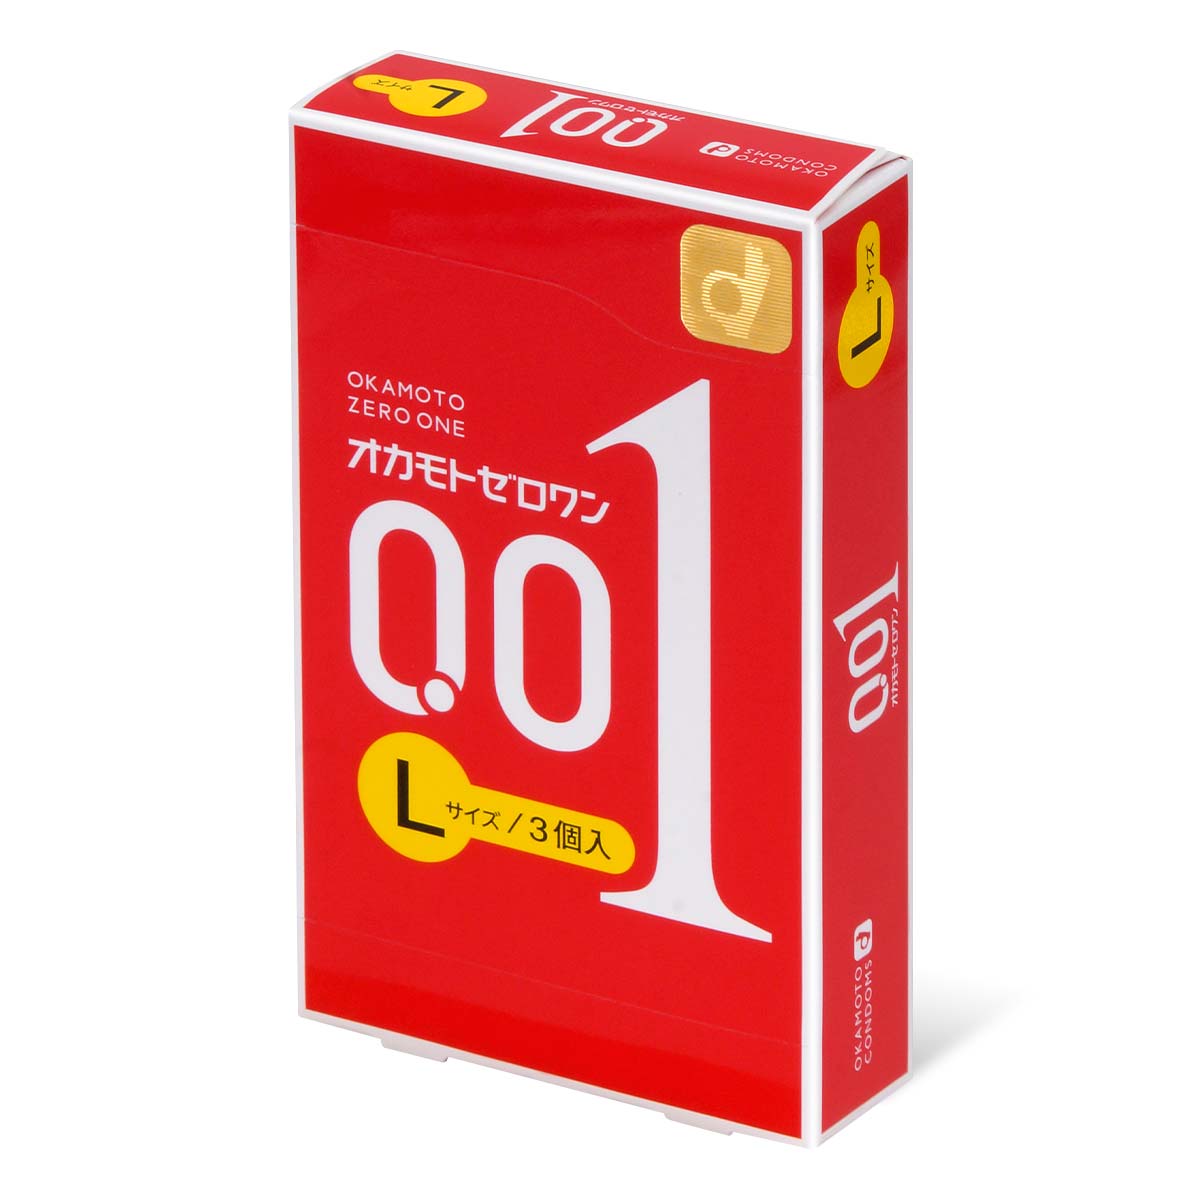 Okamoto 0.01 L size 3's Pack PU Condom-thumb_1